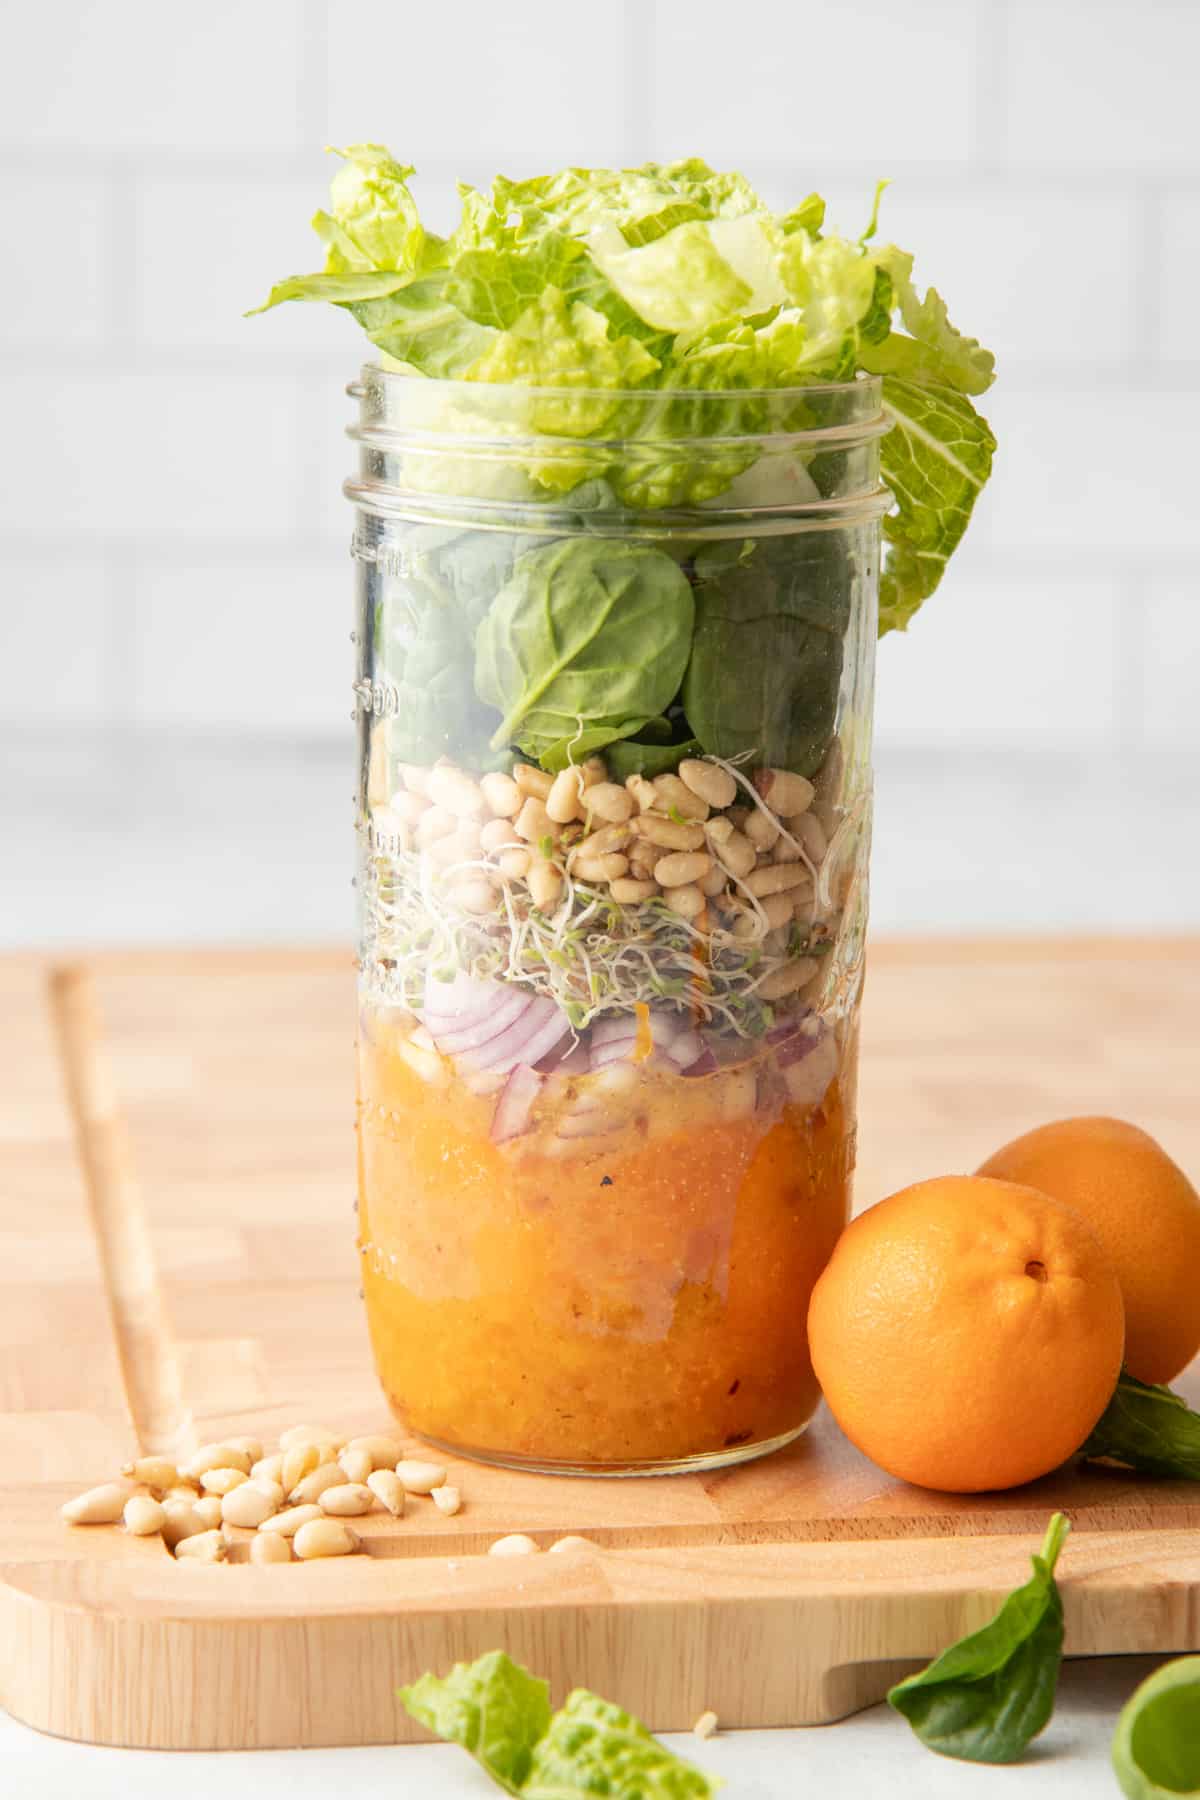 Sunshine Mandarin Orange Salad in a Jar